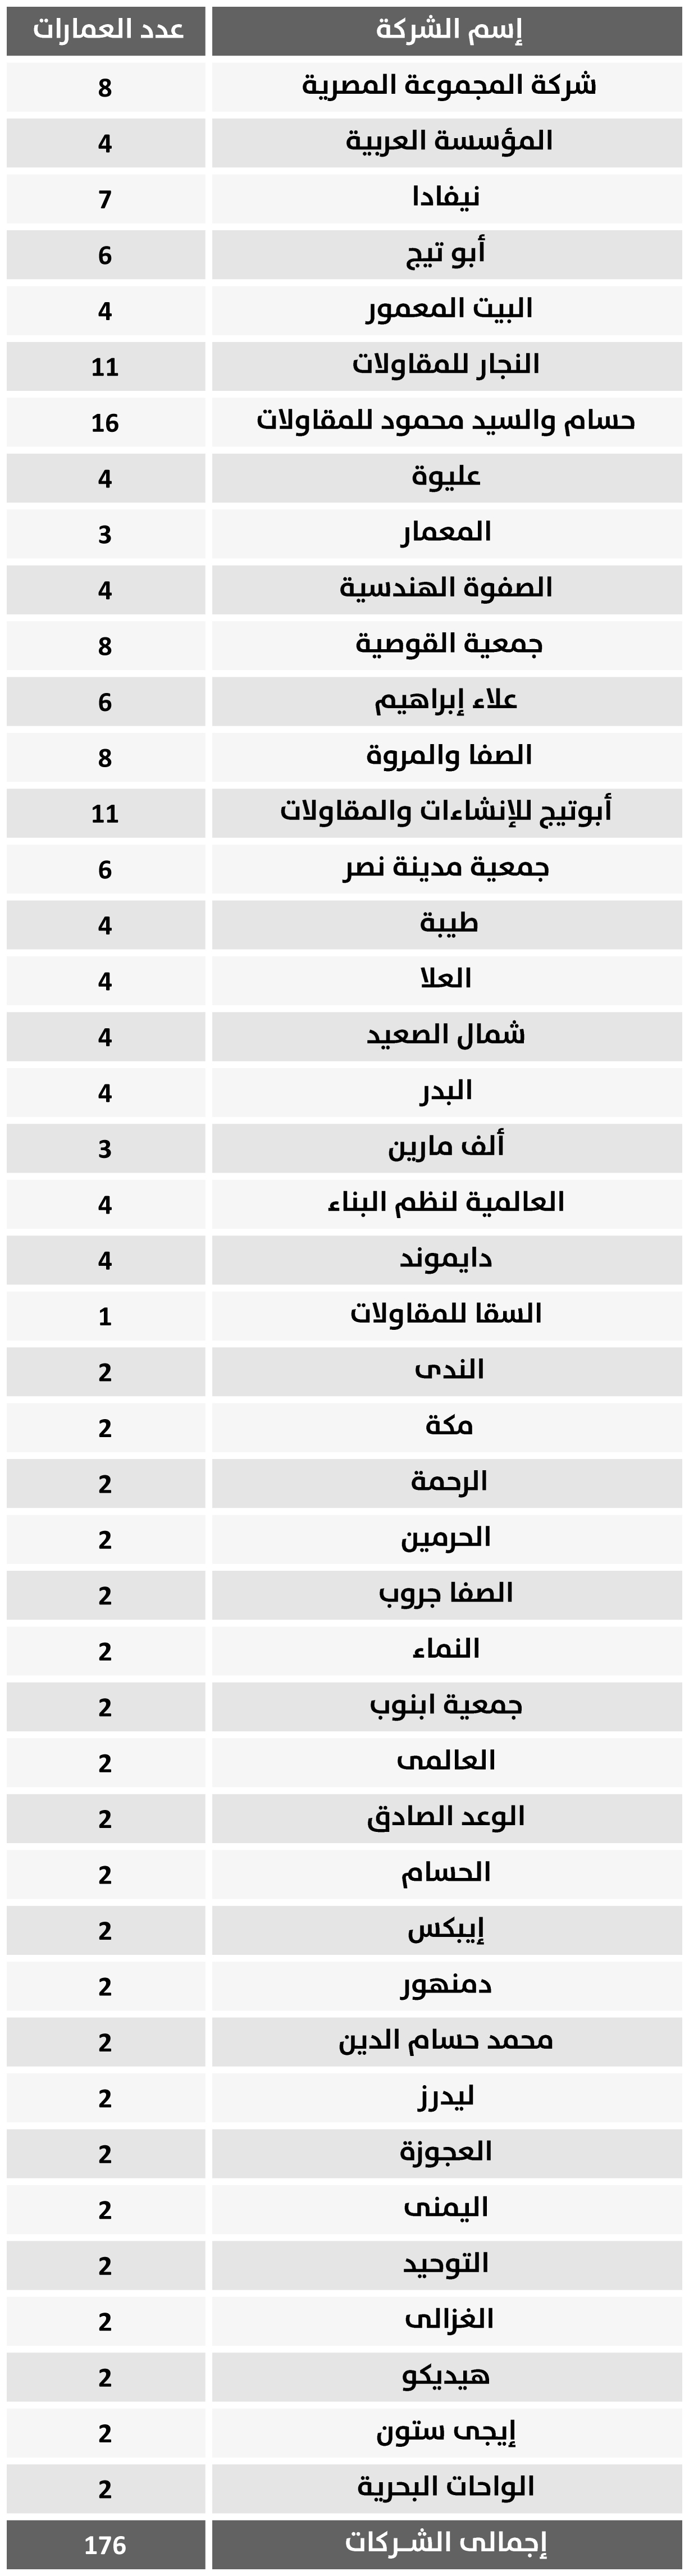 جدول بأسماء شركات المرحلة الأولي من دار مصر